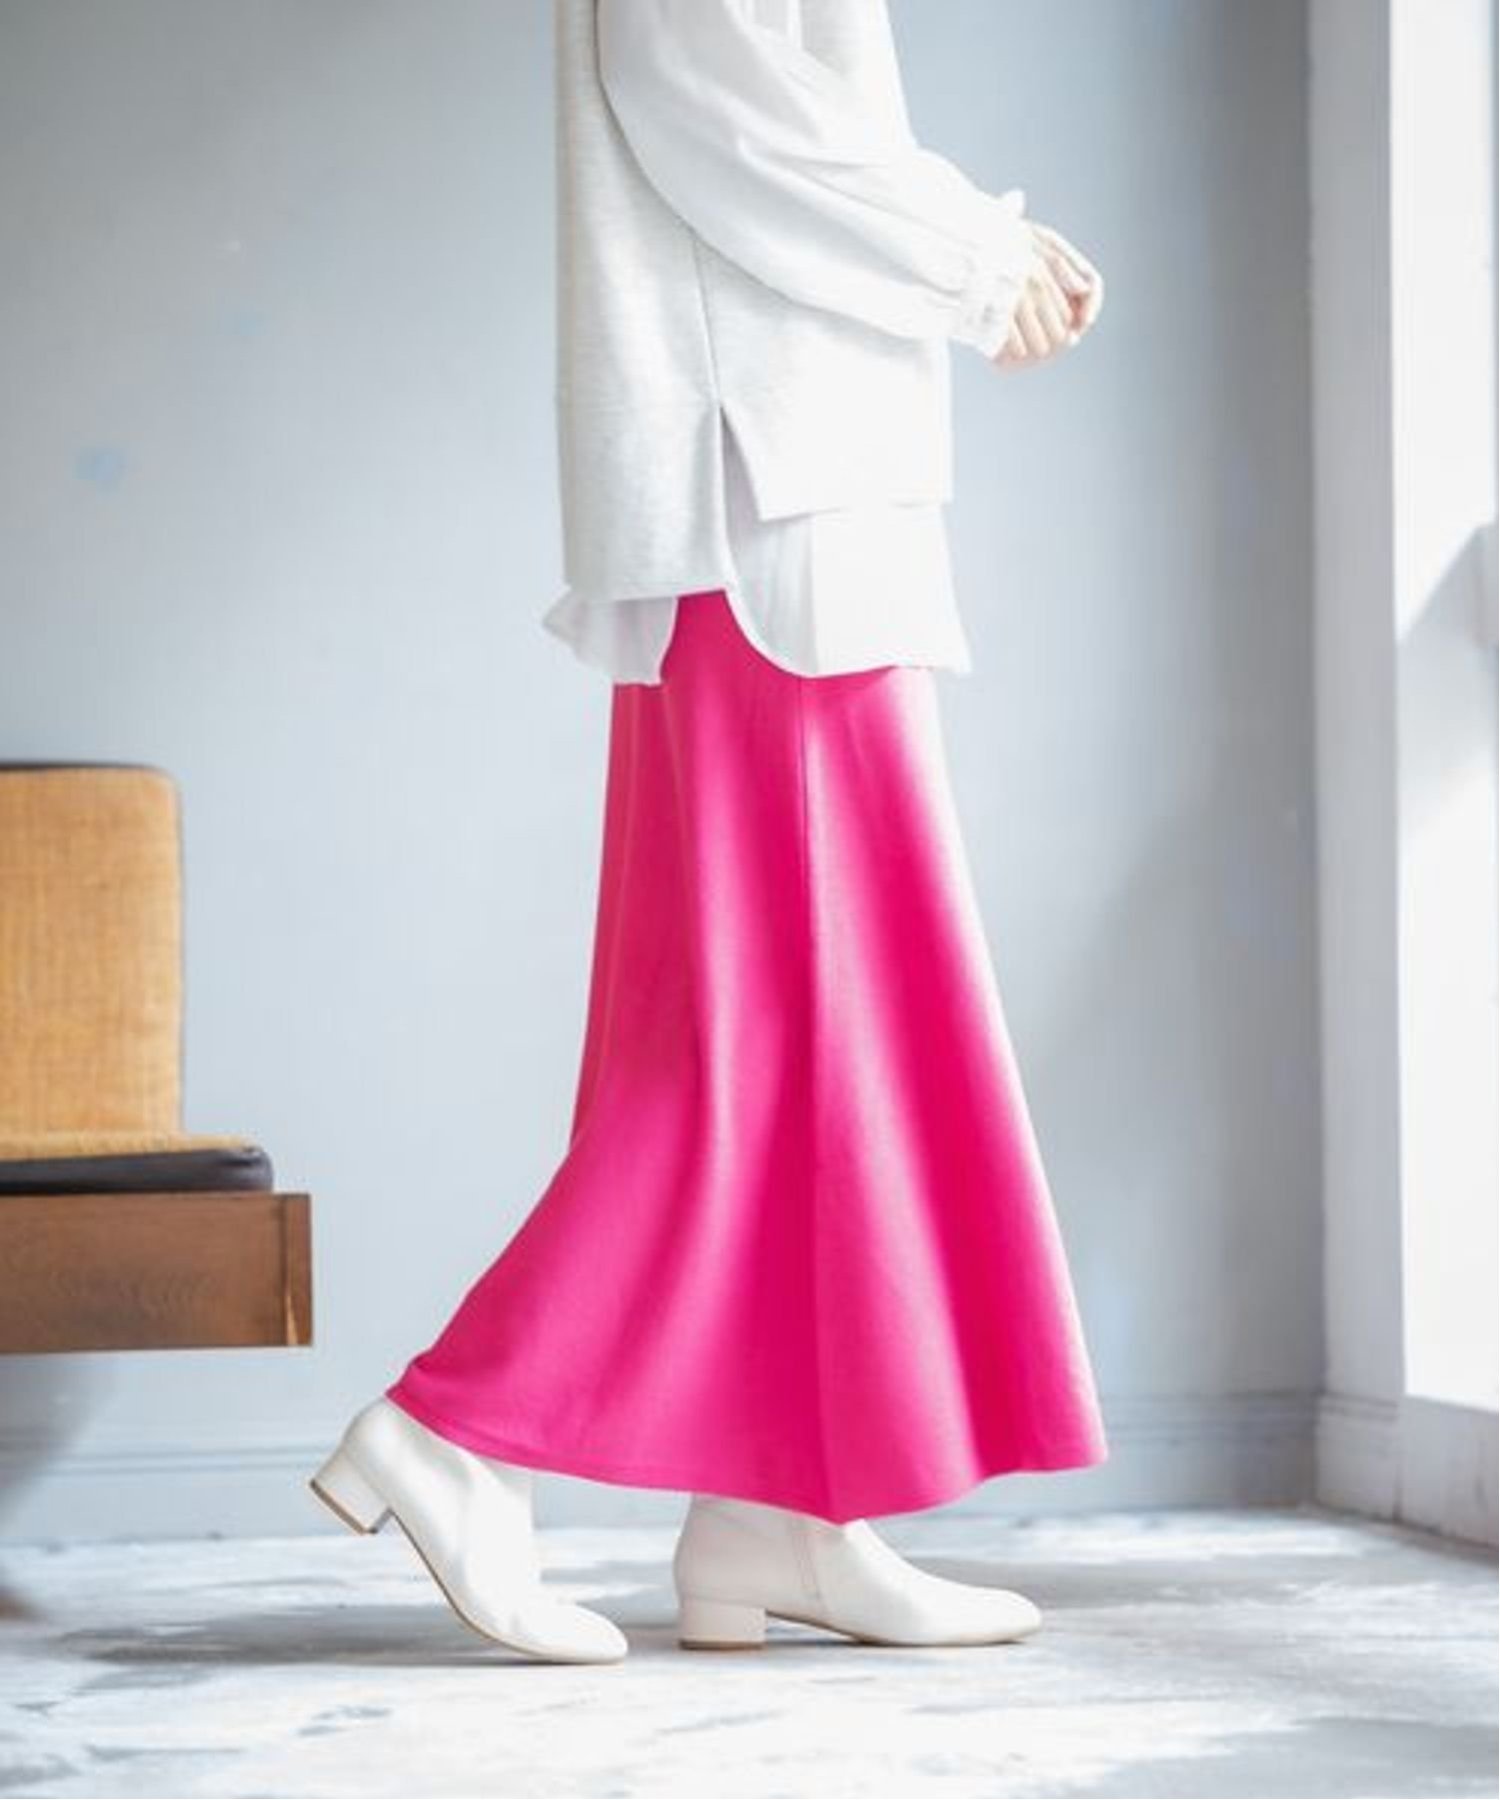 LEPSIM 12G満たされフレアニットスカート レプシィム スカート その他のスカート ピンク ホワイト グリーン ブラック【送料無料】